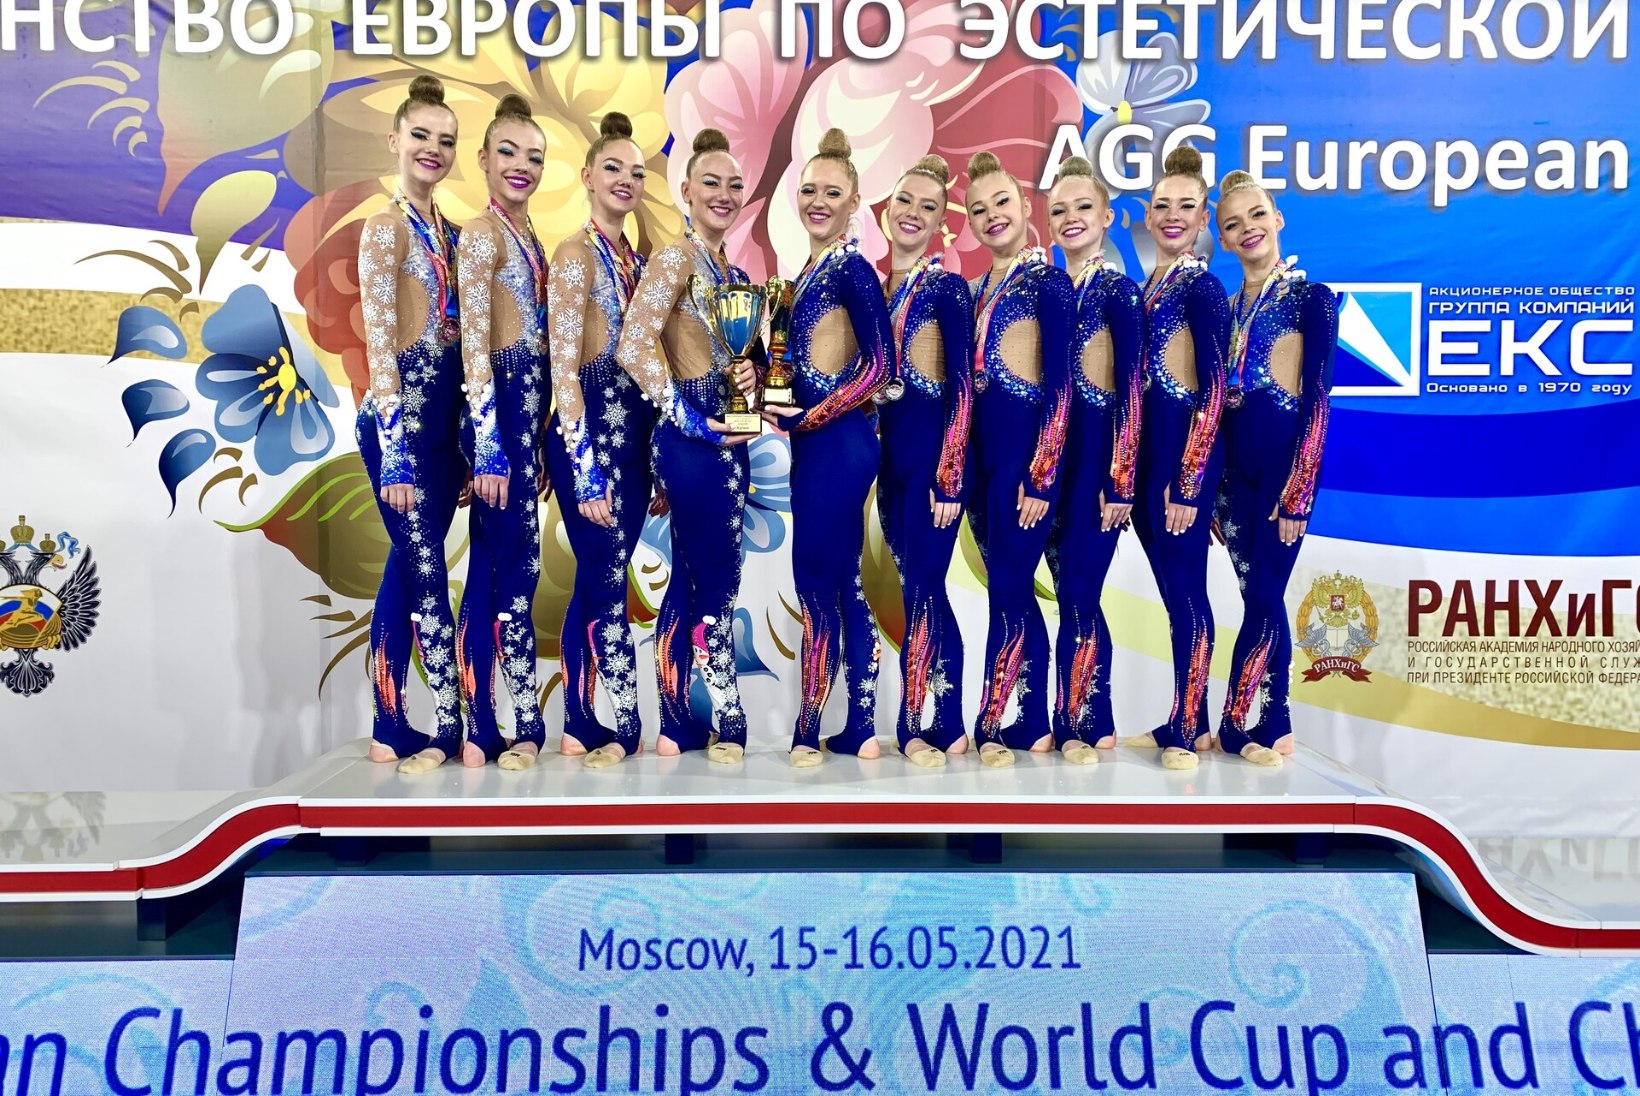 Eesti rühmvõimlejad võitsid Euroopa meistrivõistlustel hõbemedali 